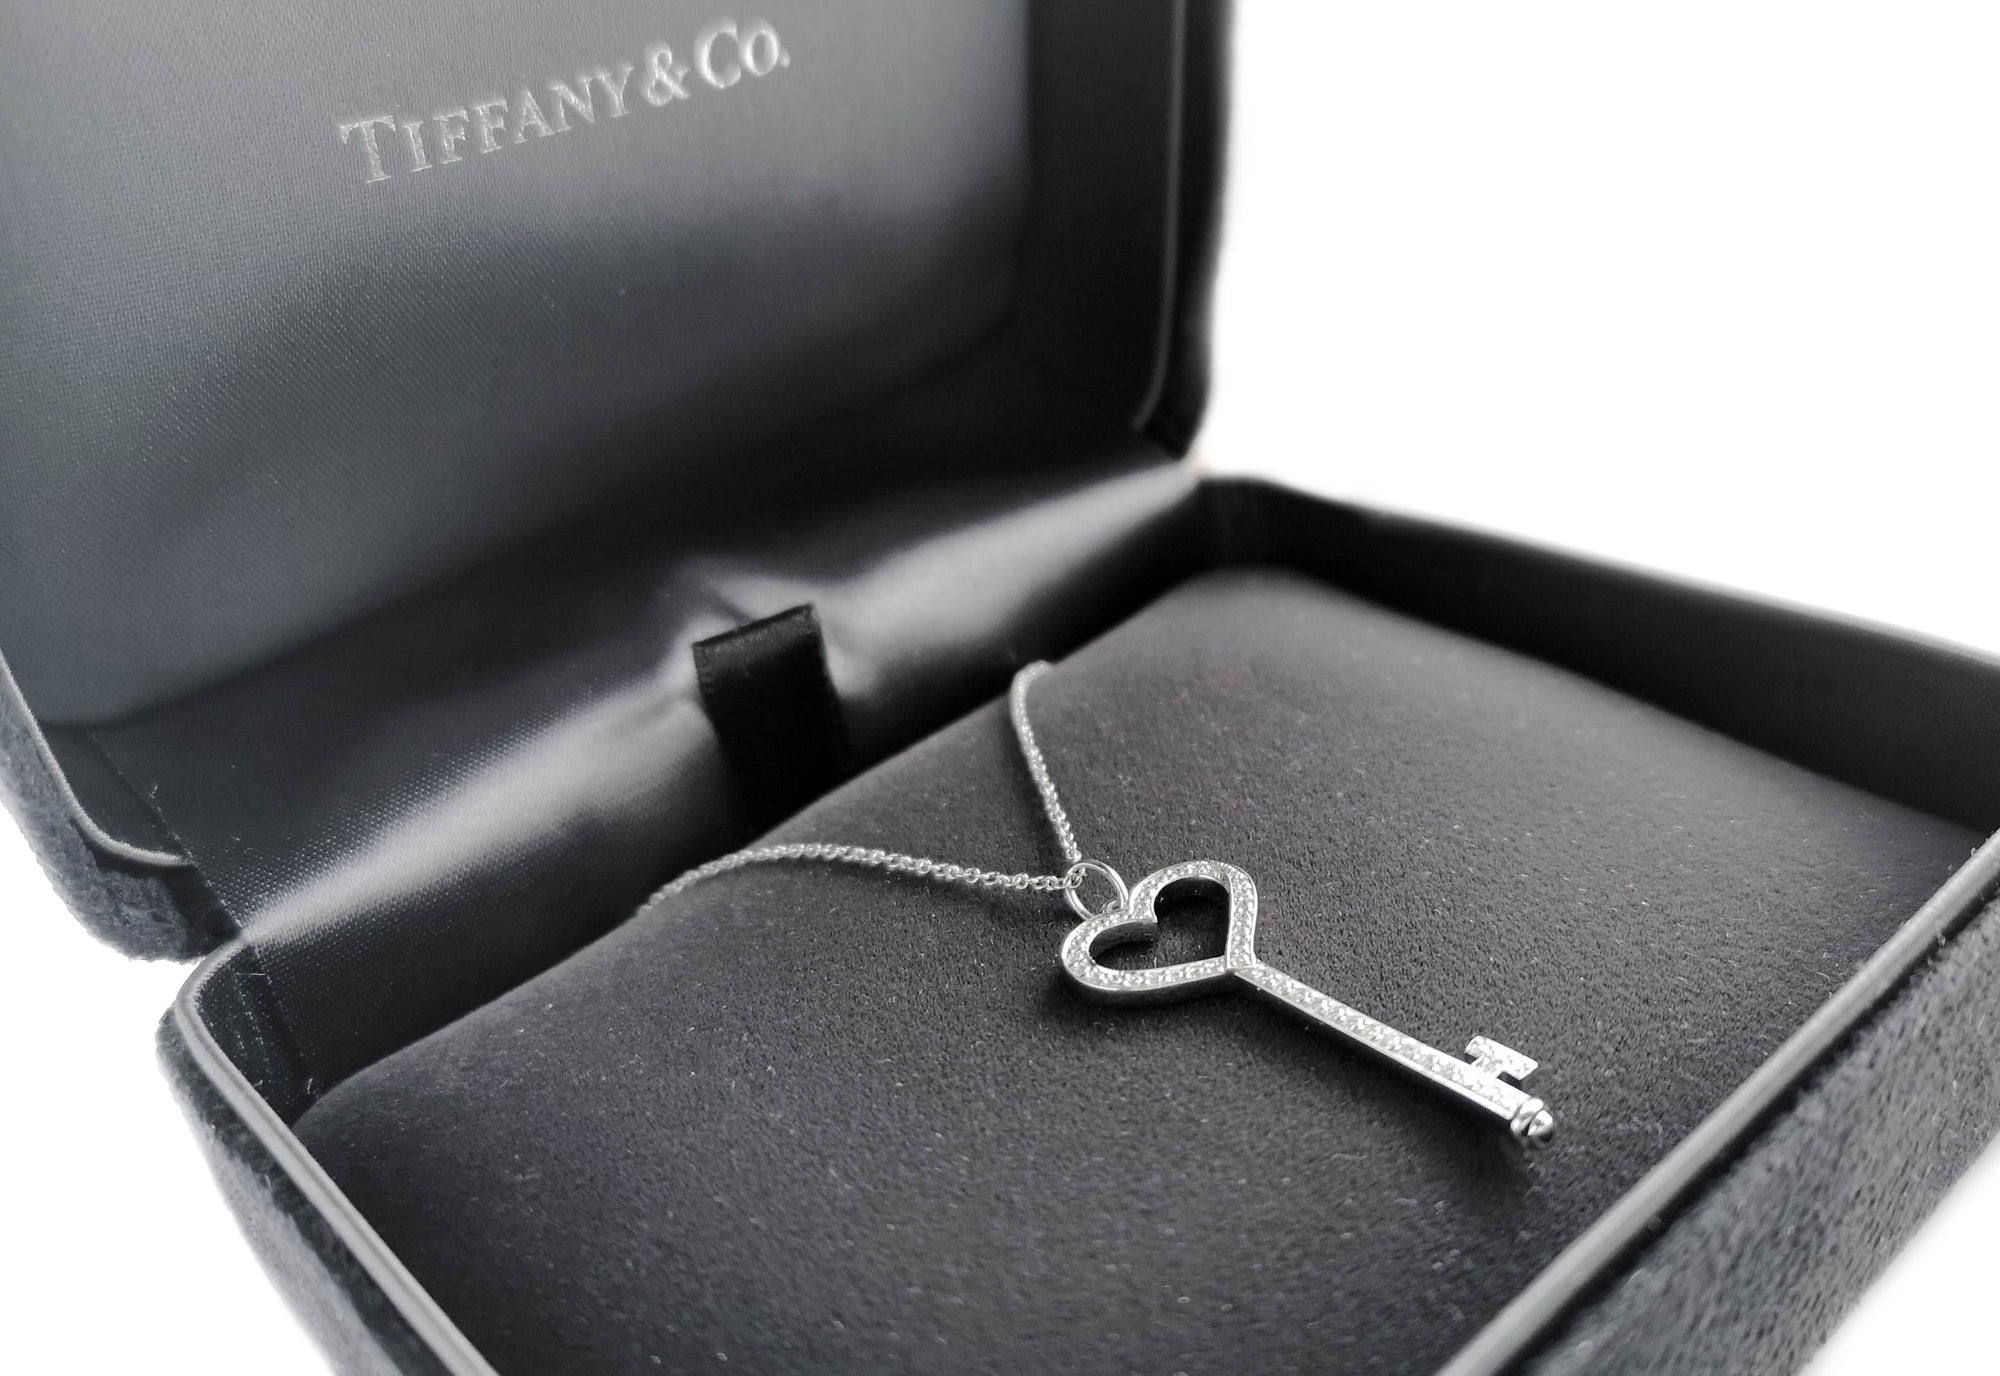 Tiffany & Co. Heart Key Diamond Pendant, Small, 20" Chain